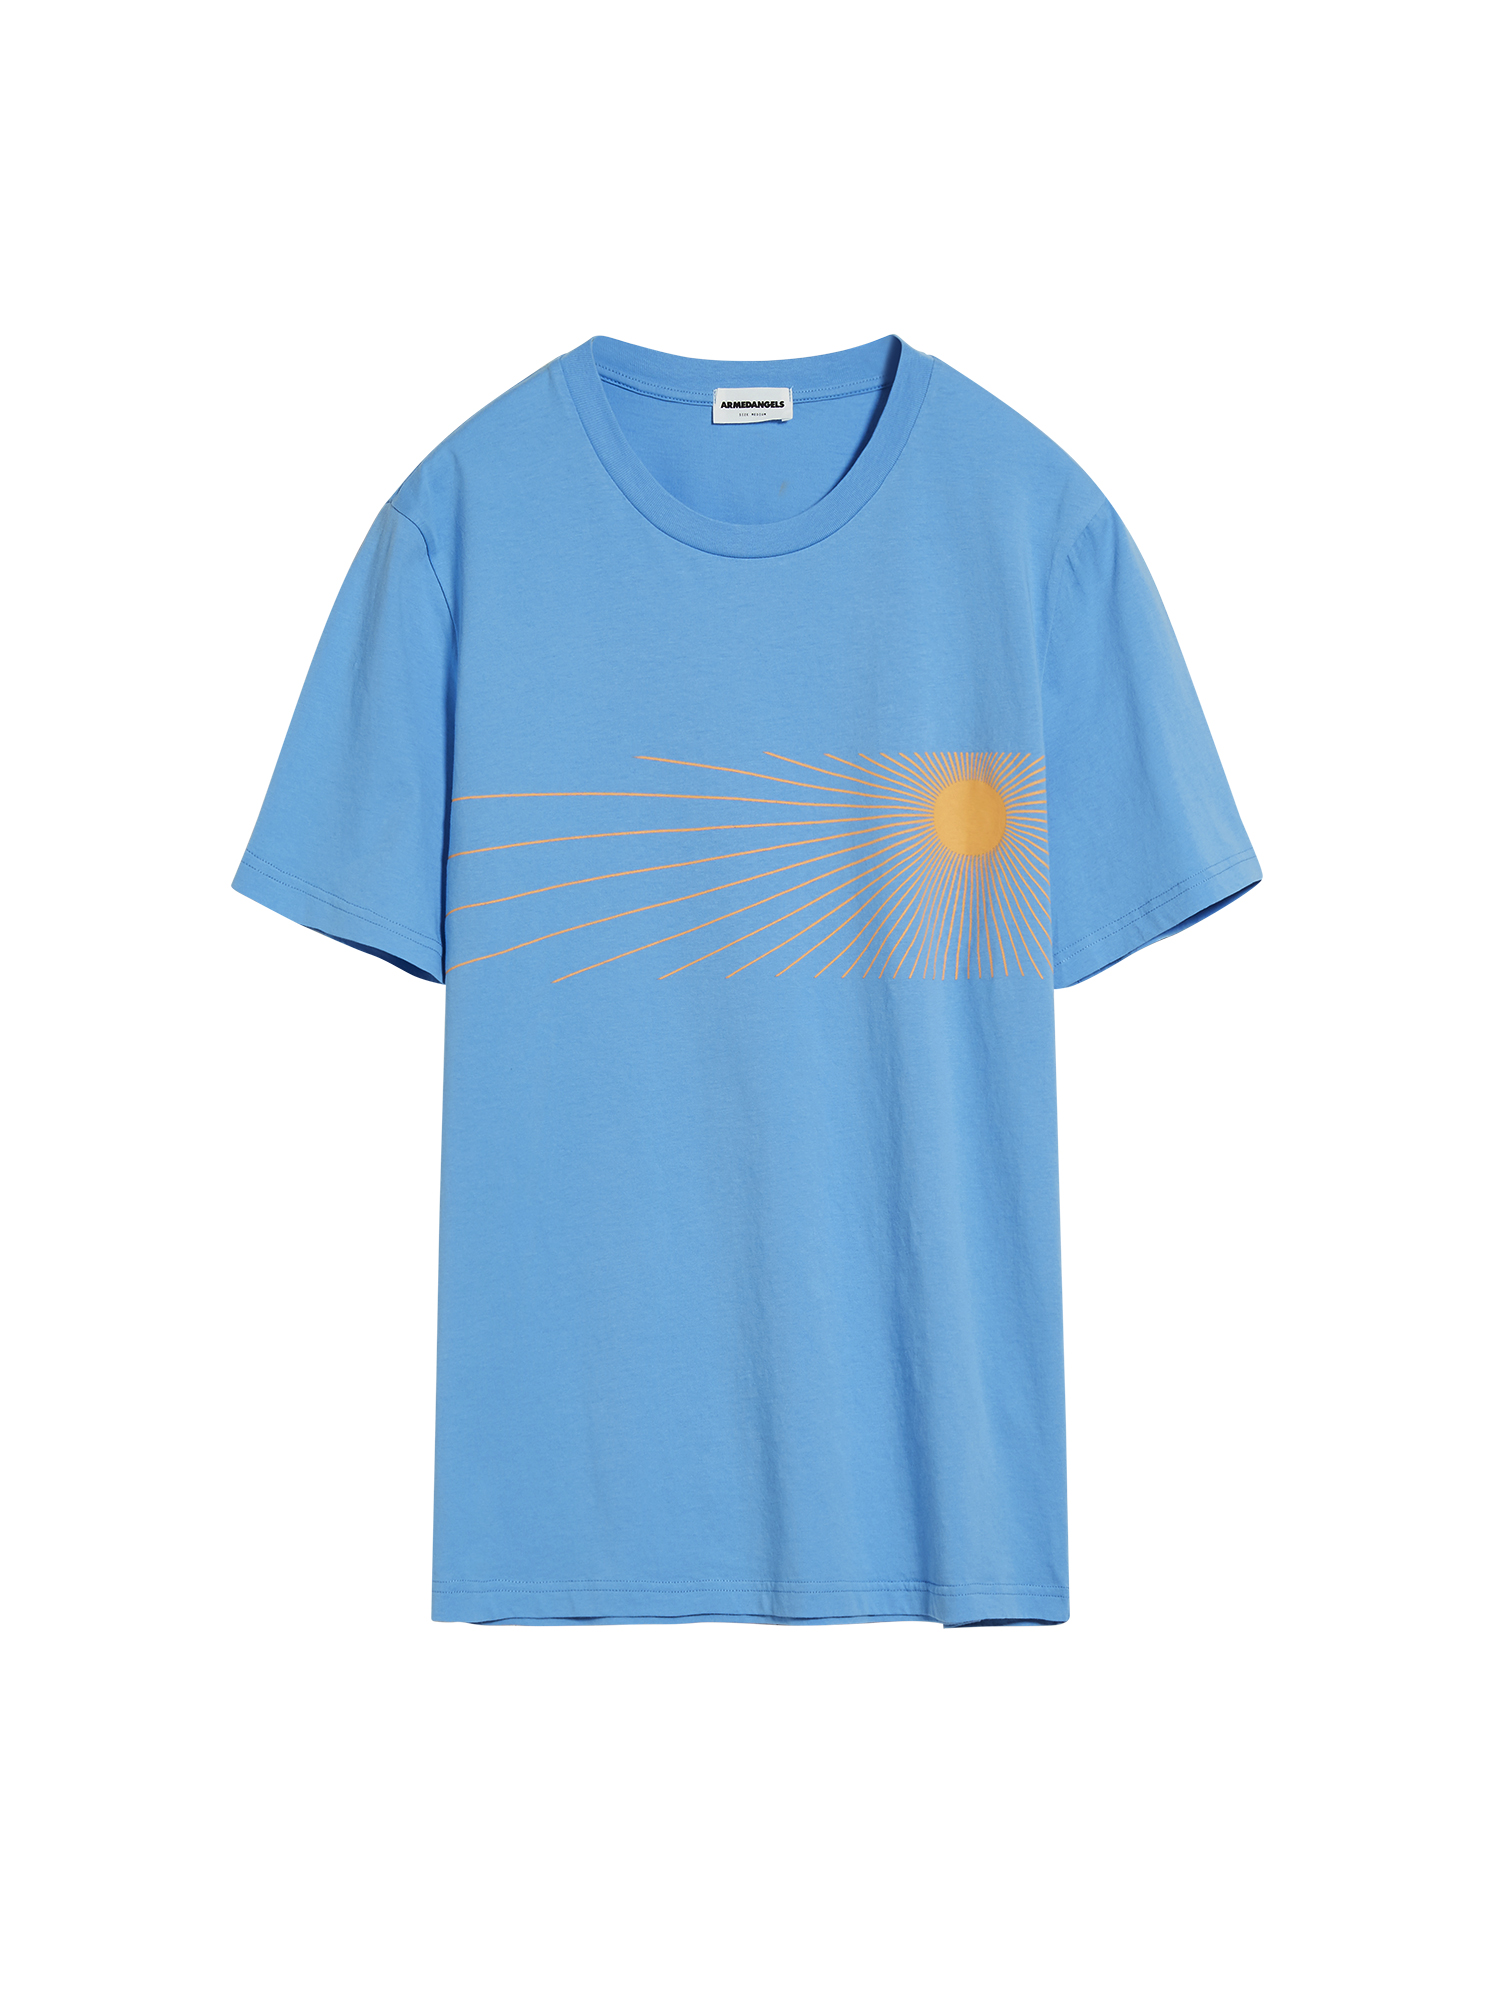 T-Shirt Jaames Sunshine von Armedangels 